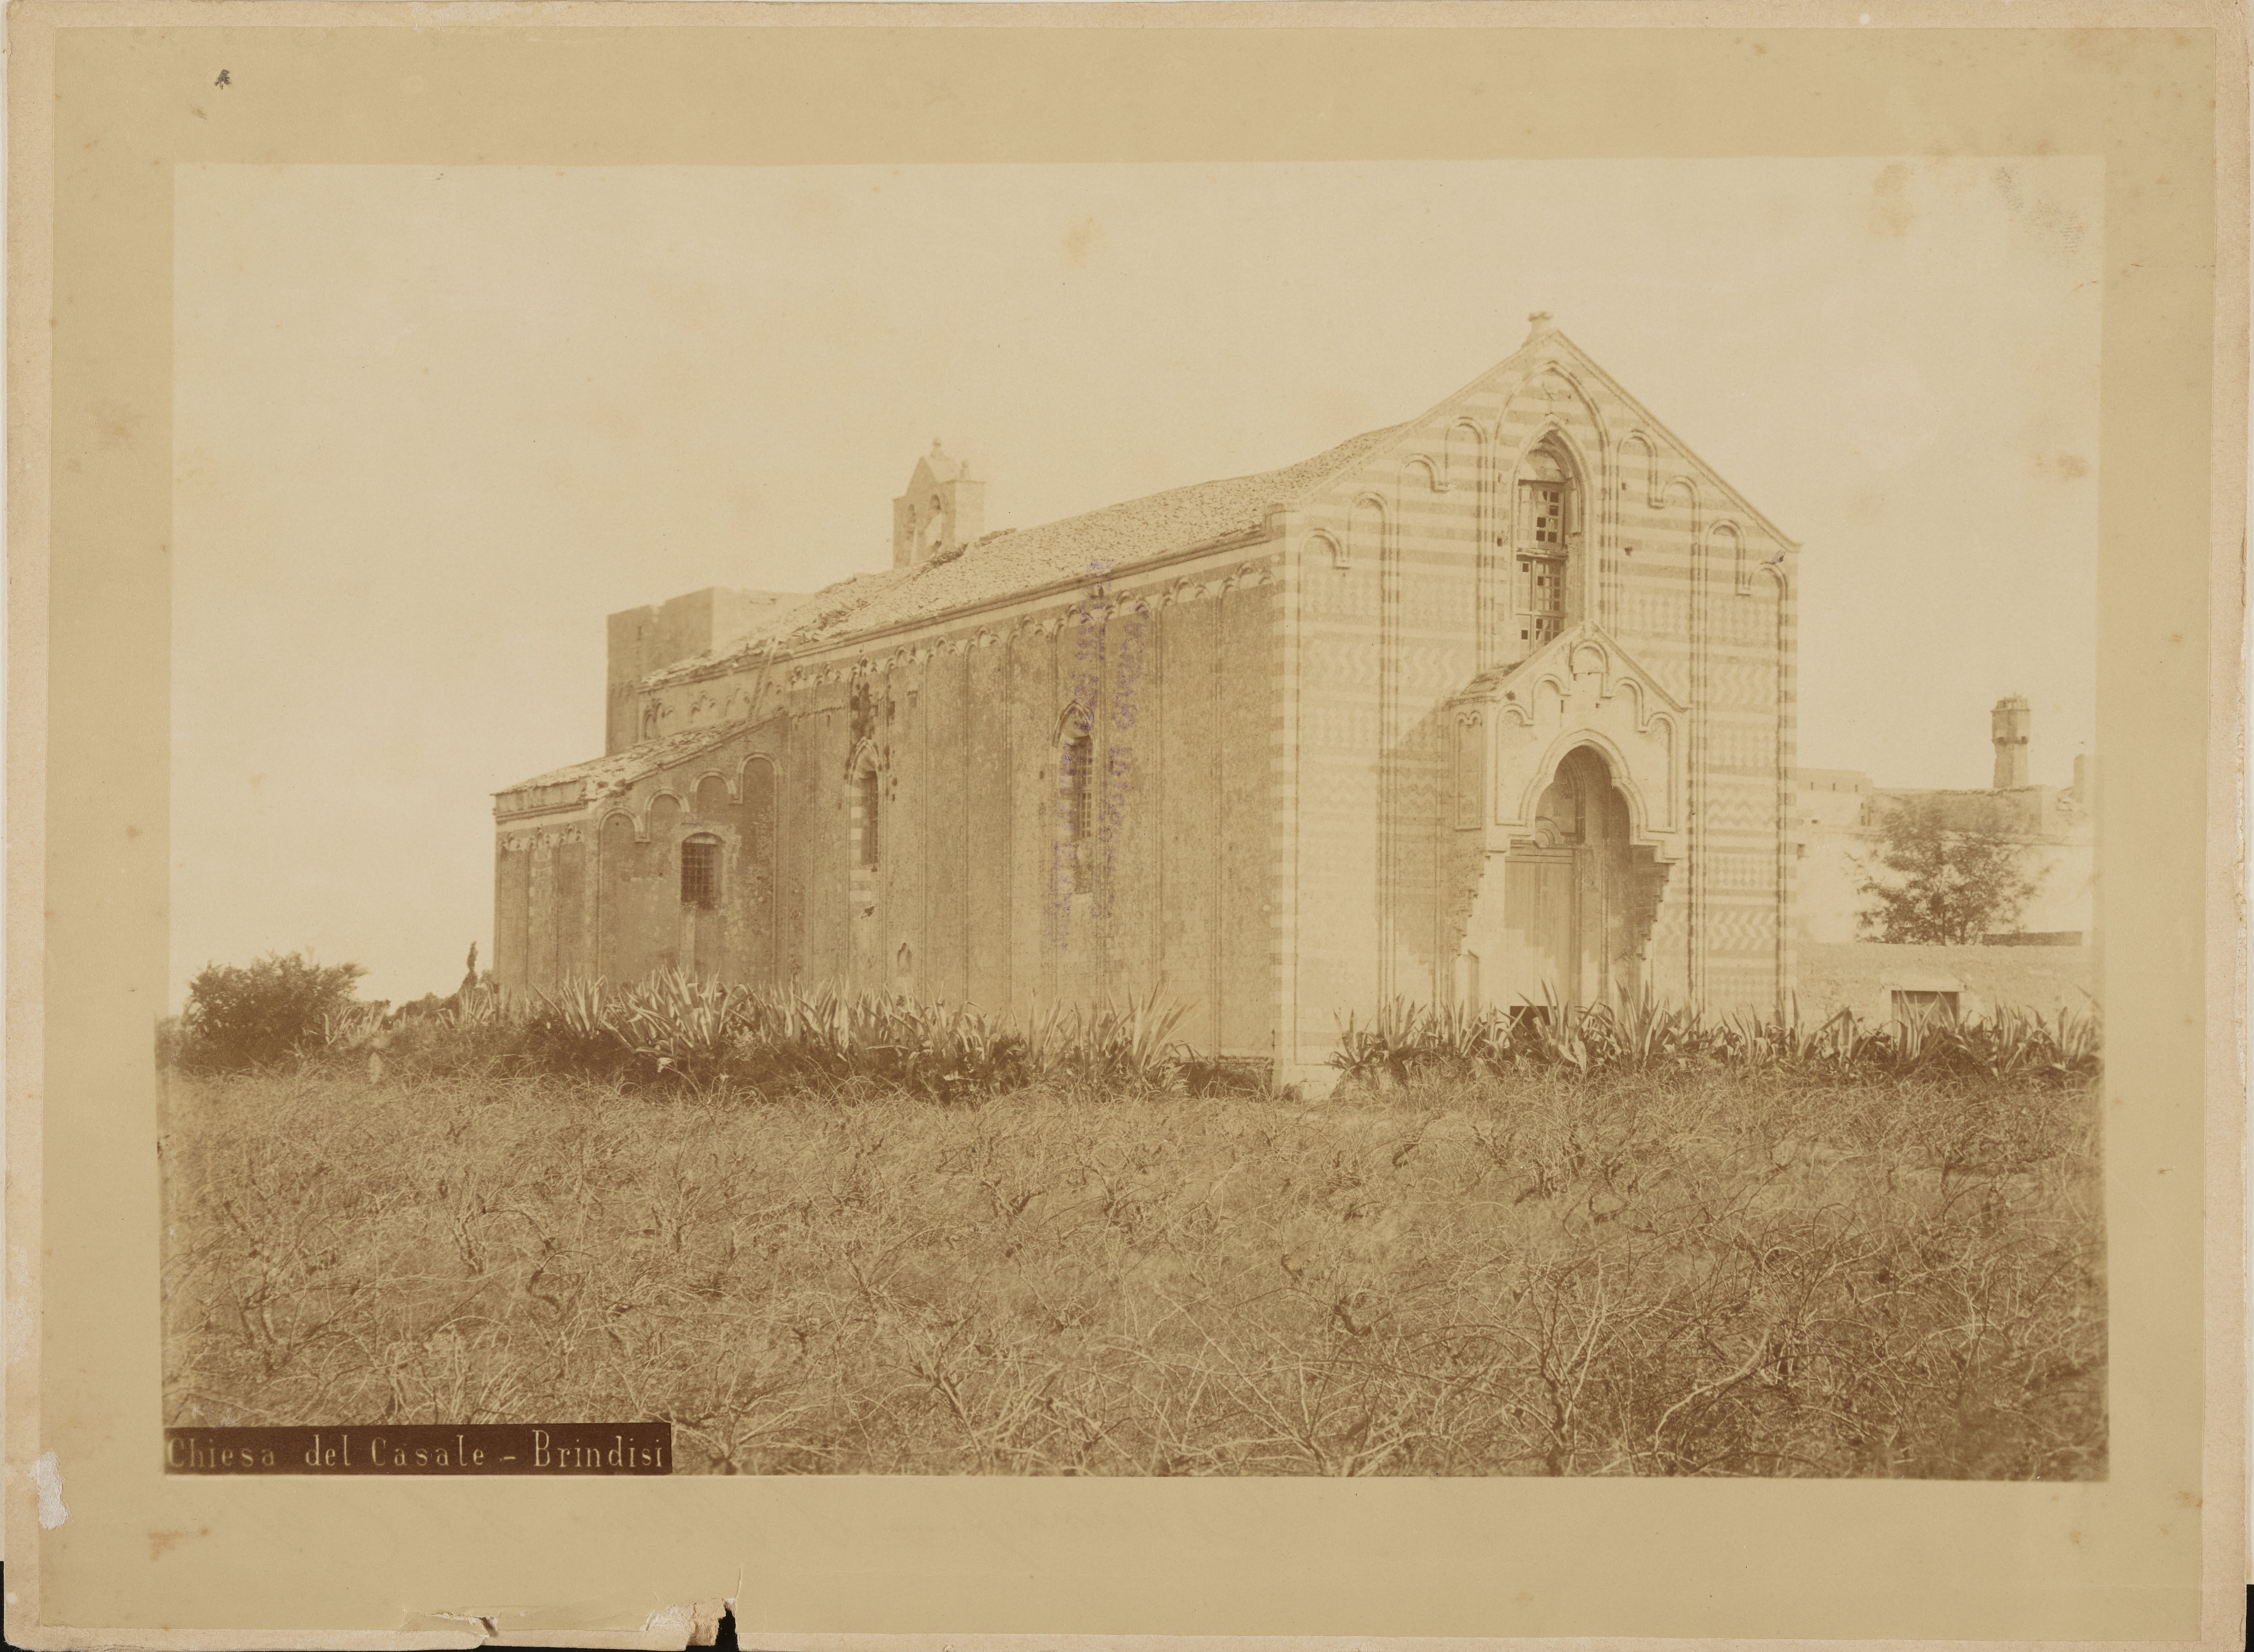 Fotografo non identificato, Brindisi - Chiesa di S. Maria del Casale, esterno, 1876-1900, albumina, MPI141595